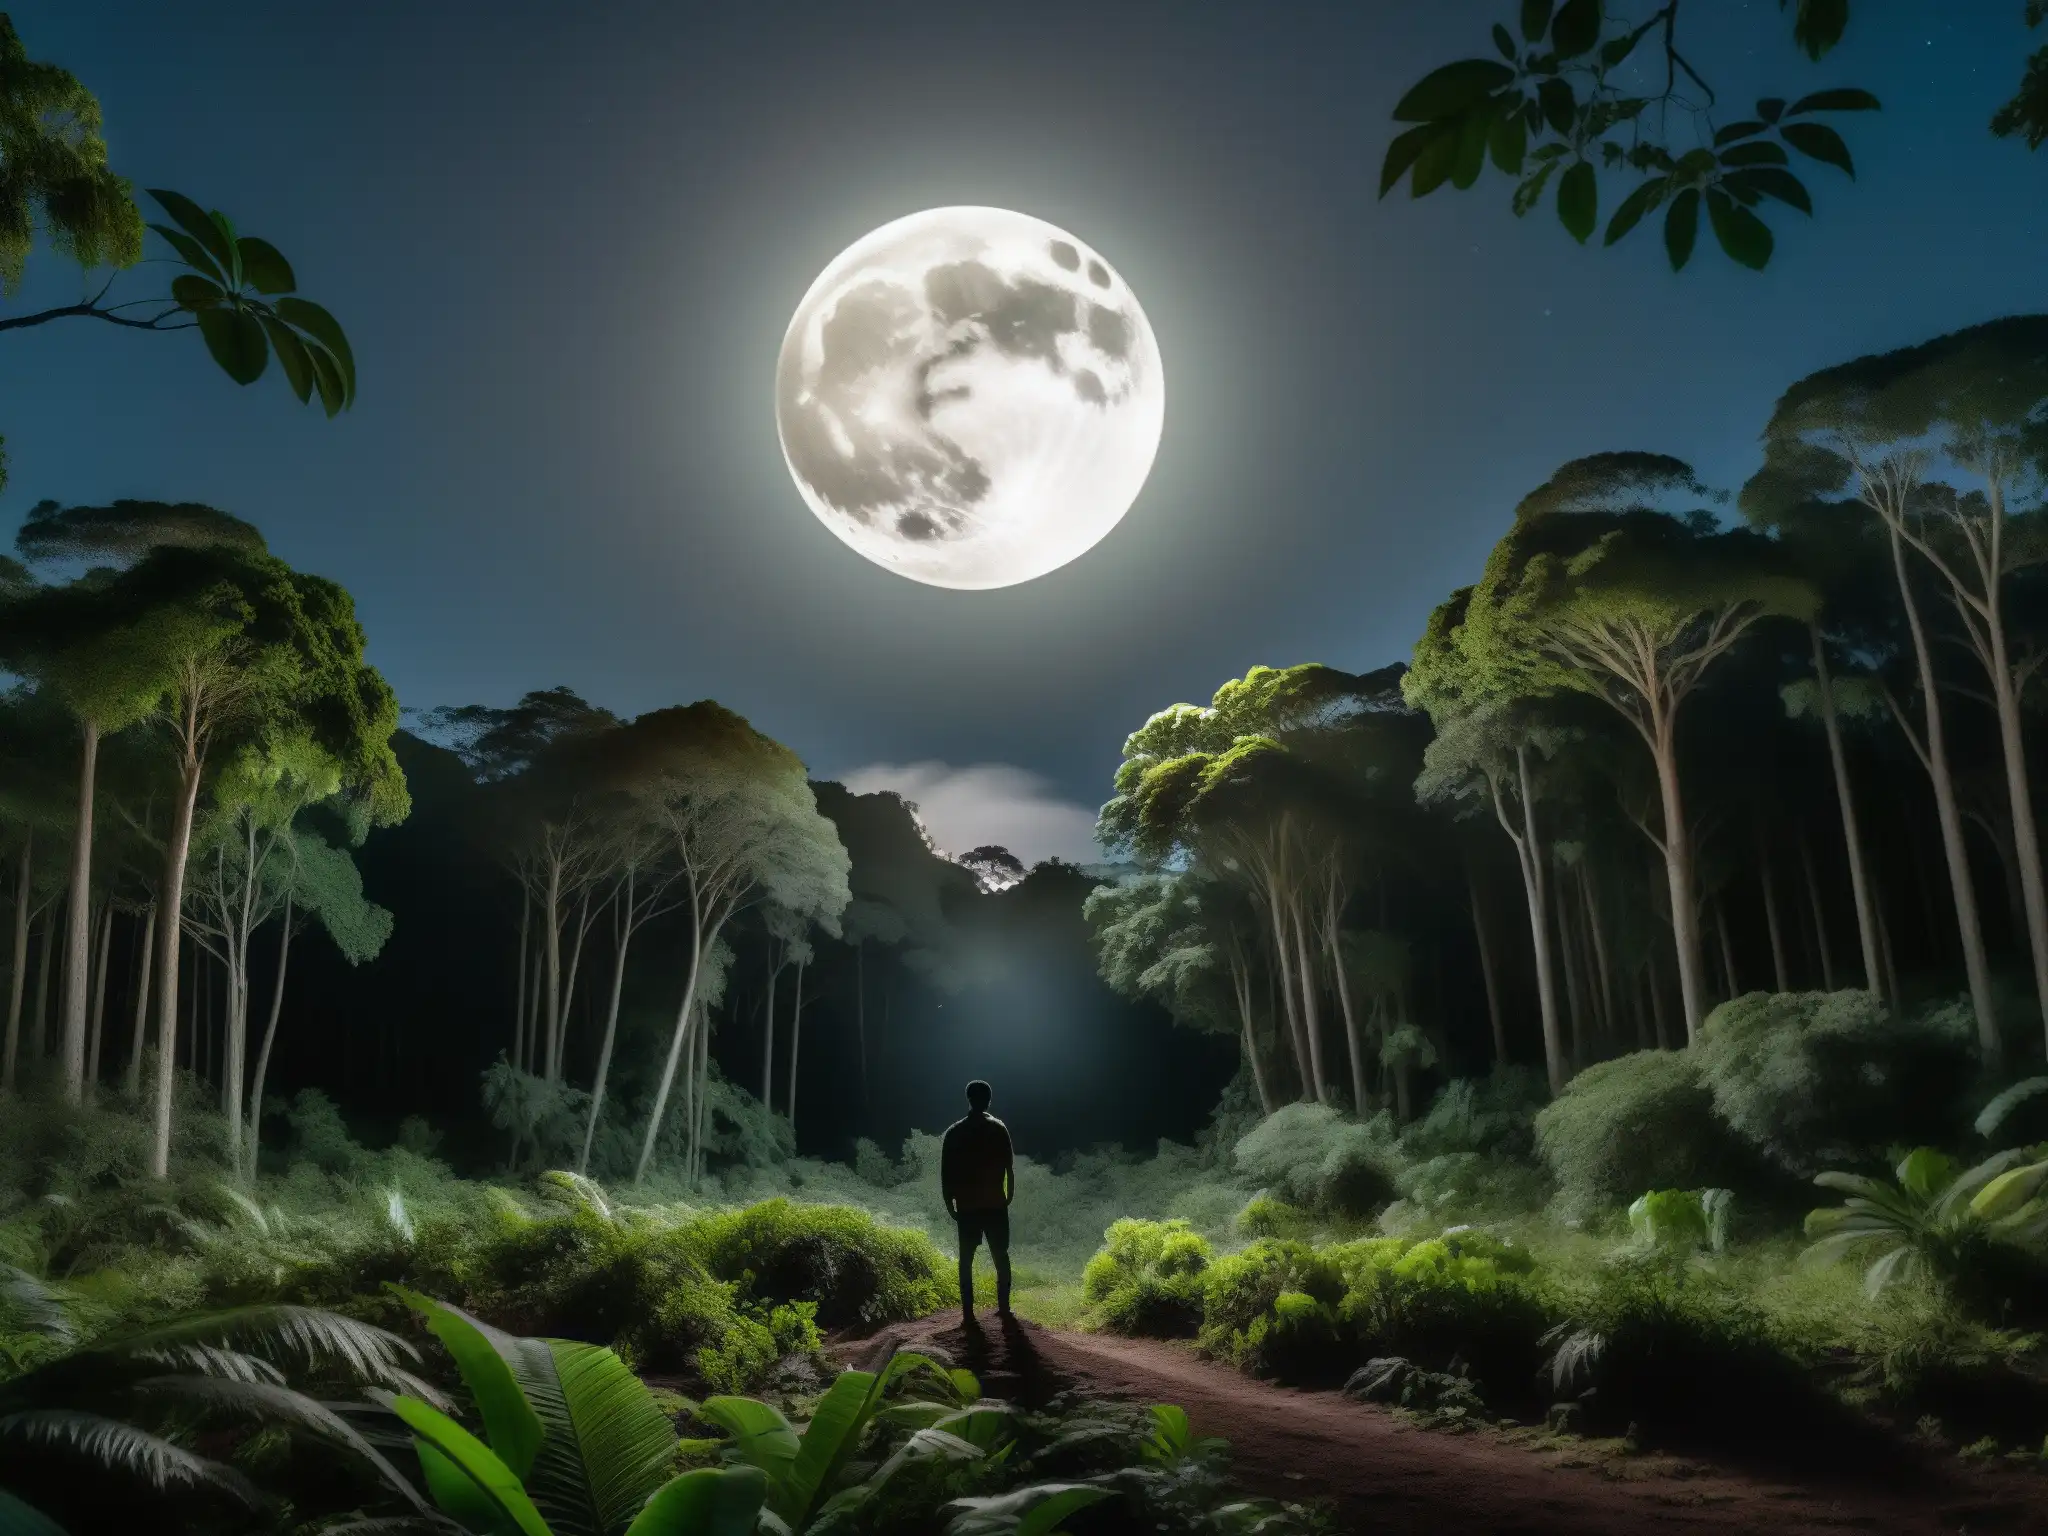 Imagen de un bosque sudamericano iluminado por la luna llena, con un misterioso ser parcialmente oculto entre la vegetación